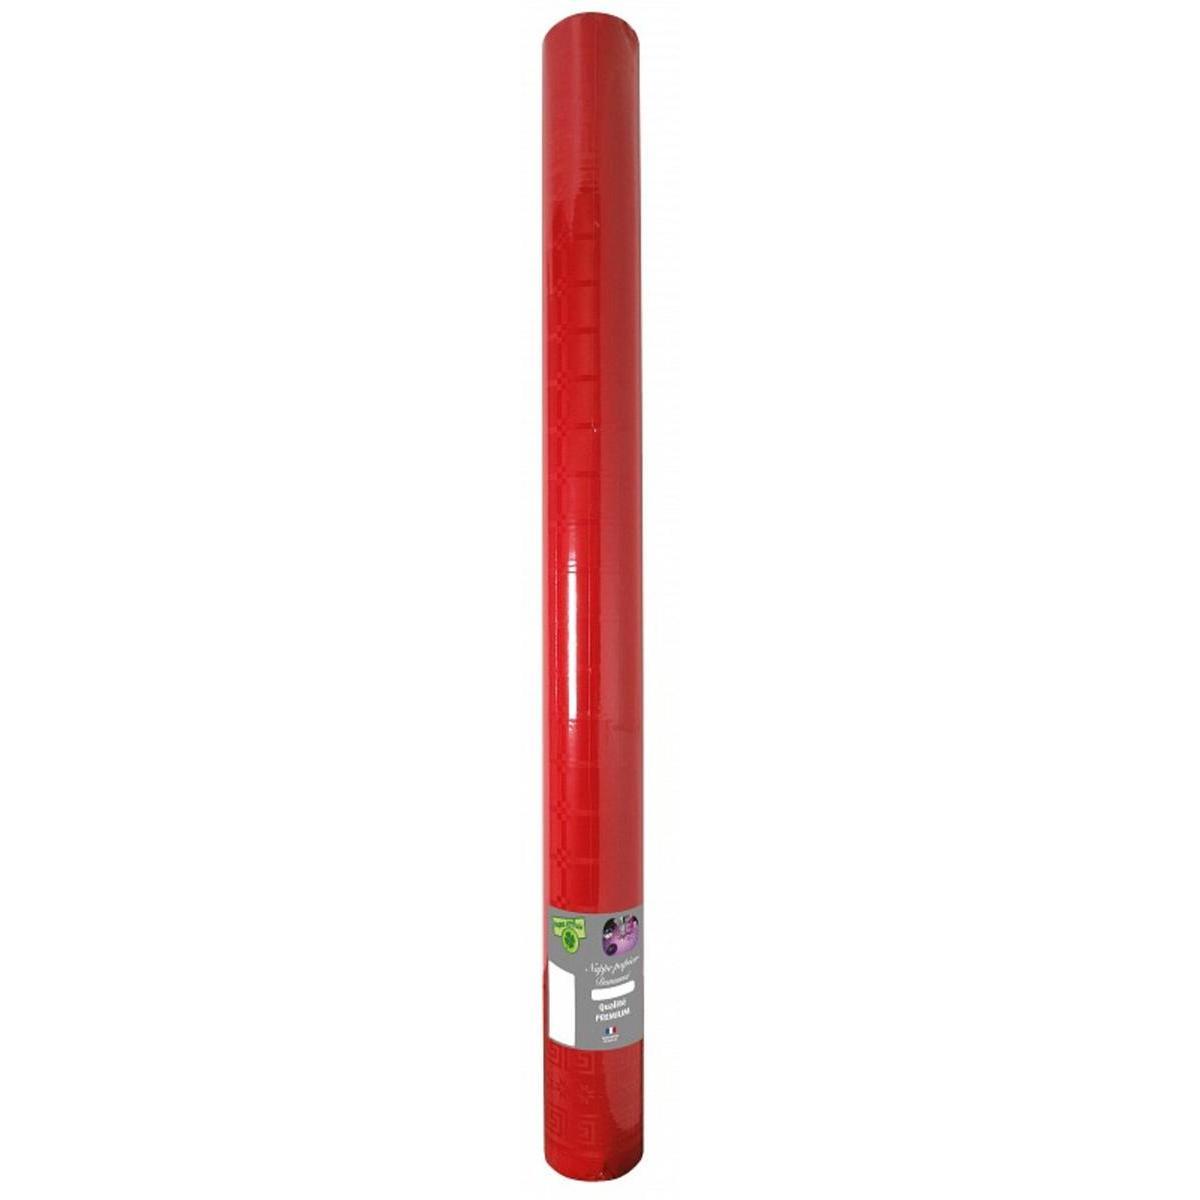 Nappe effet damassé - Papier - 6 m x 120 cm - Rouge